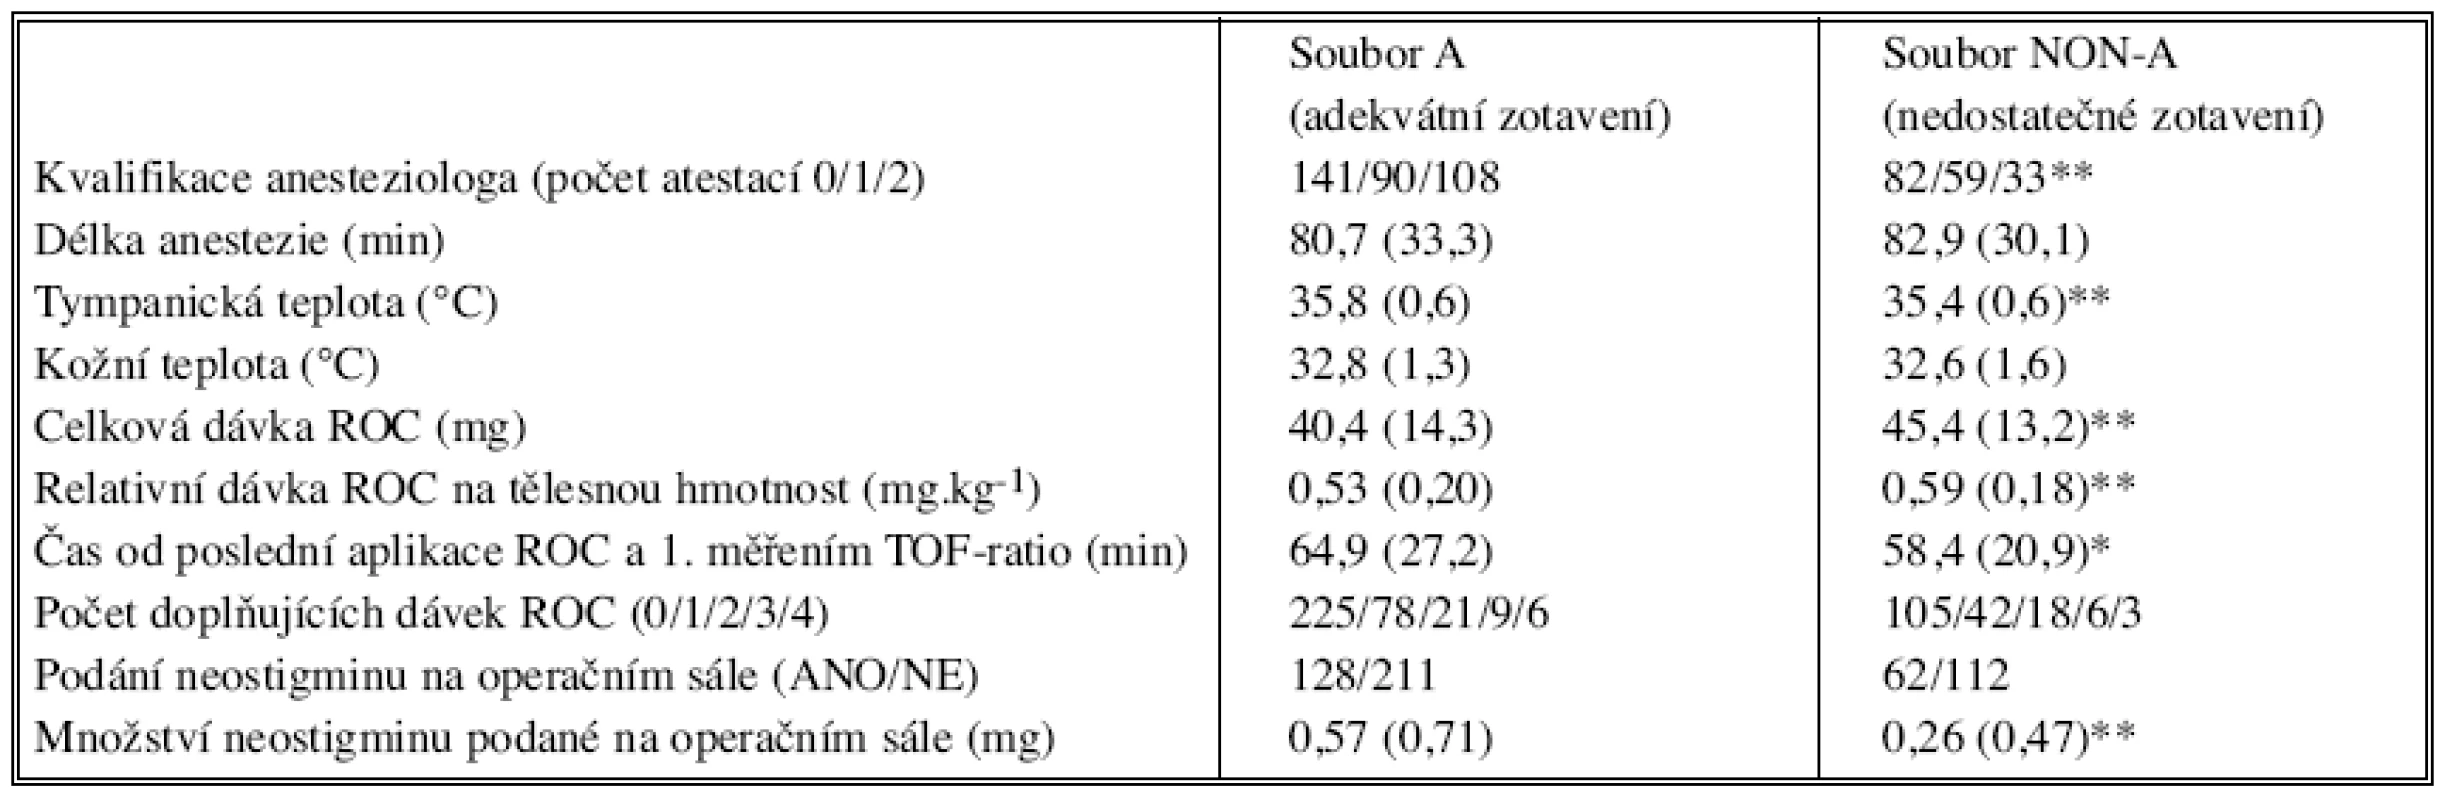 Klinické údaje nemocných s adekvátním (soubor A) vs nedostatečným (soubor NON-A) zotavením z účinku rokuronia
Tab. 2. Clinical data from patients with adequate (group A) and insufficient (group NON-A) recovery from rocuronium effects